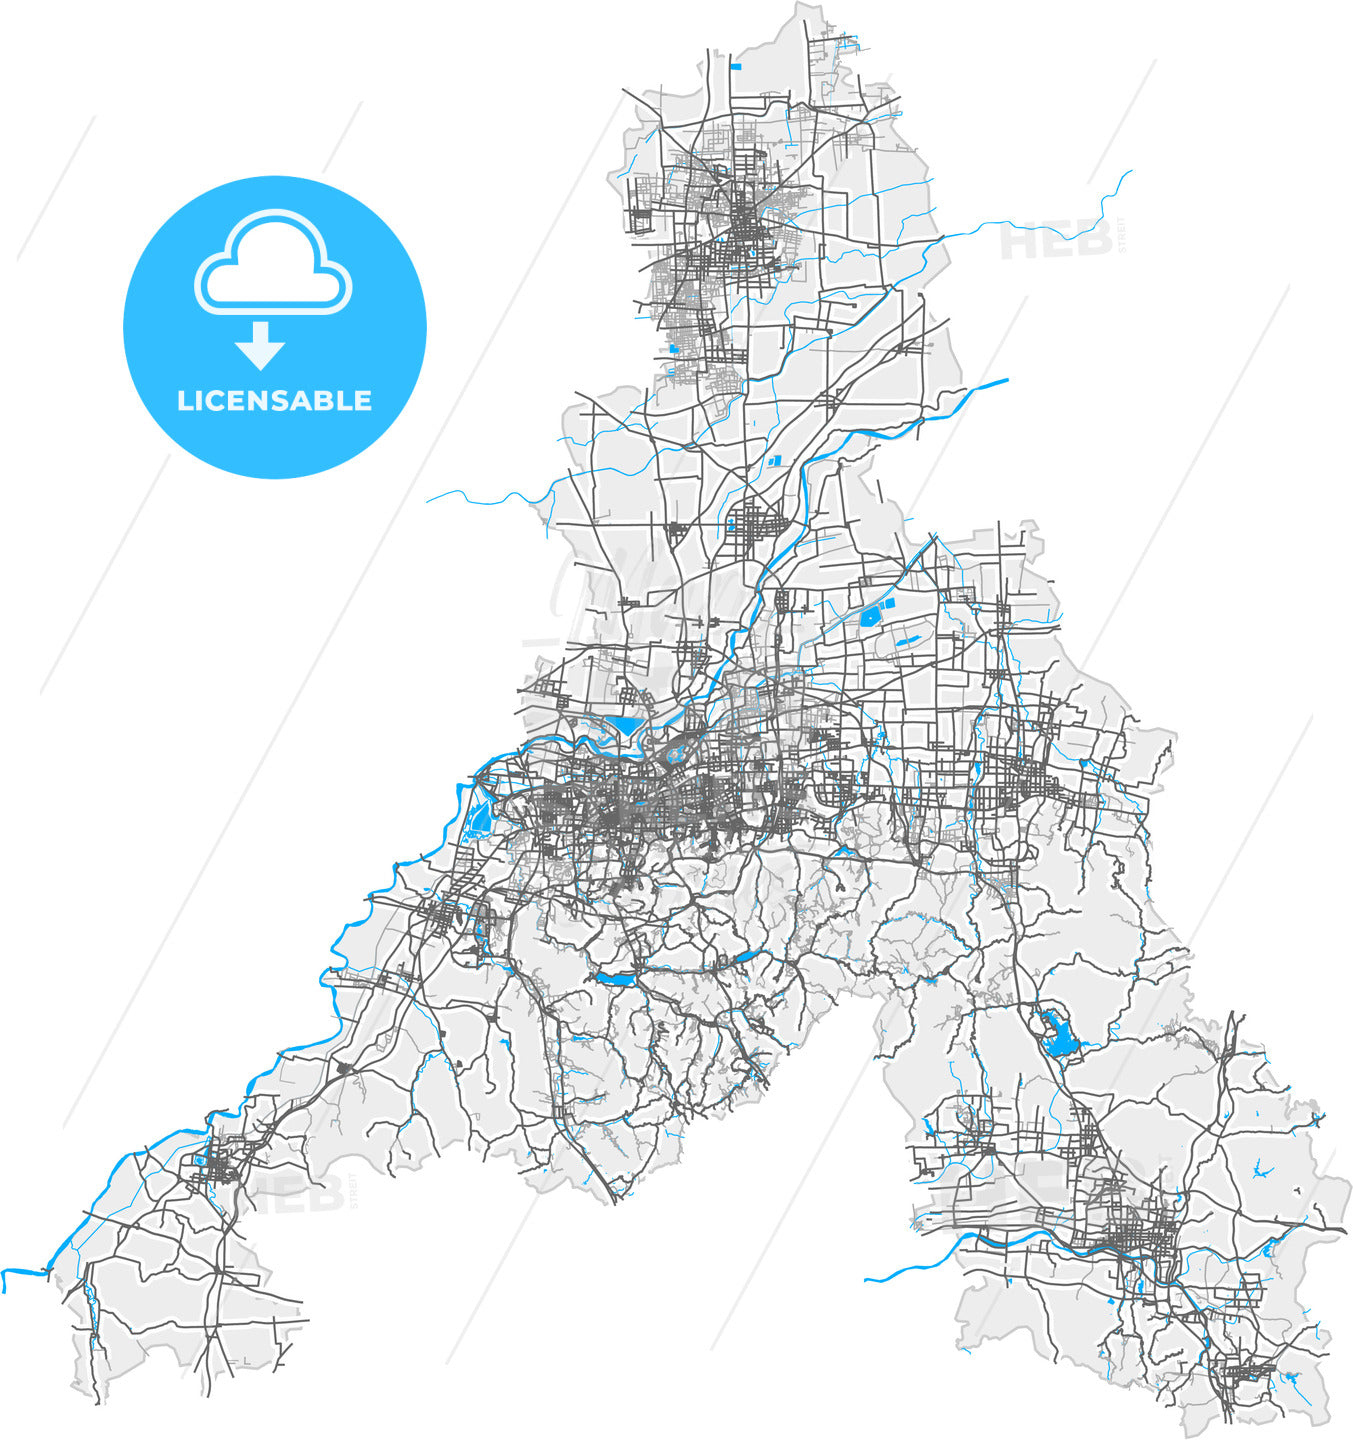 Jinan, Shandong, China, high quality vector map